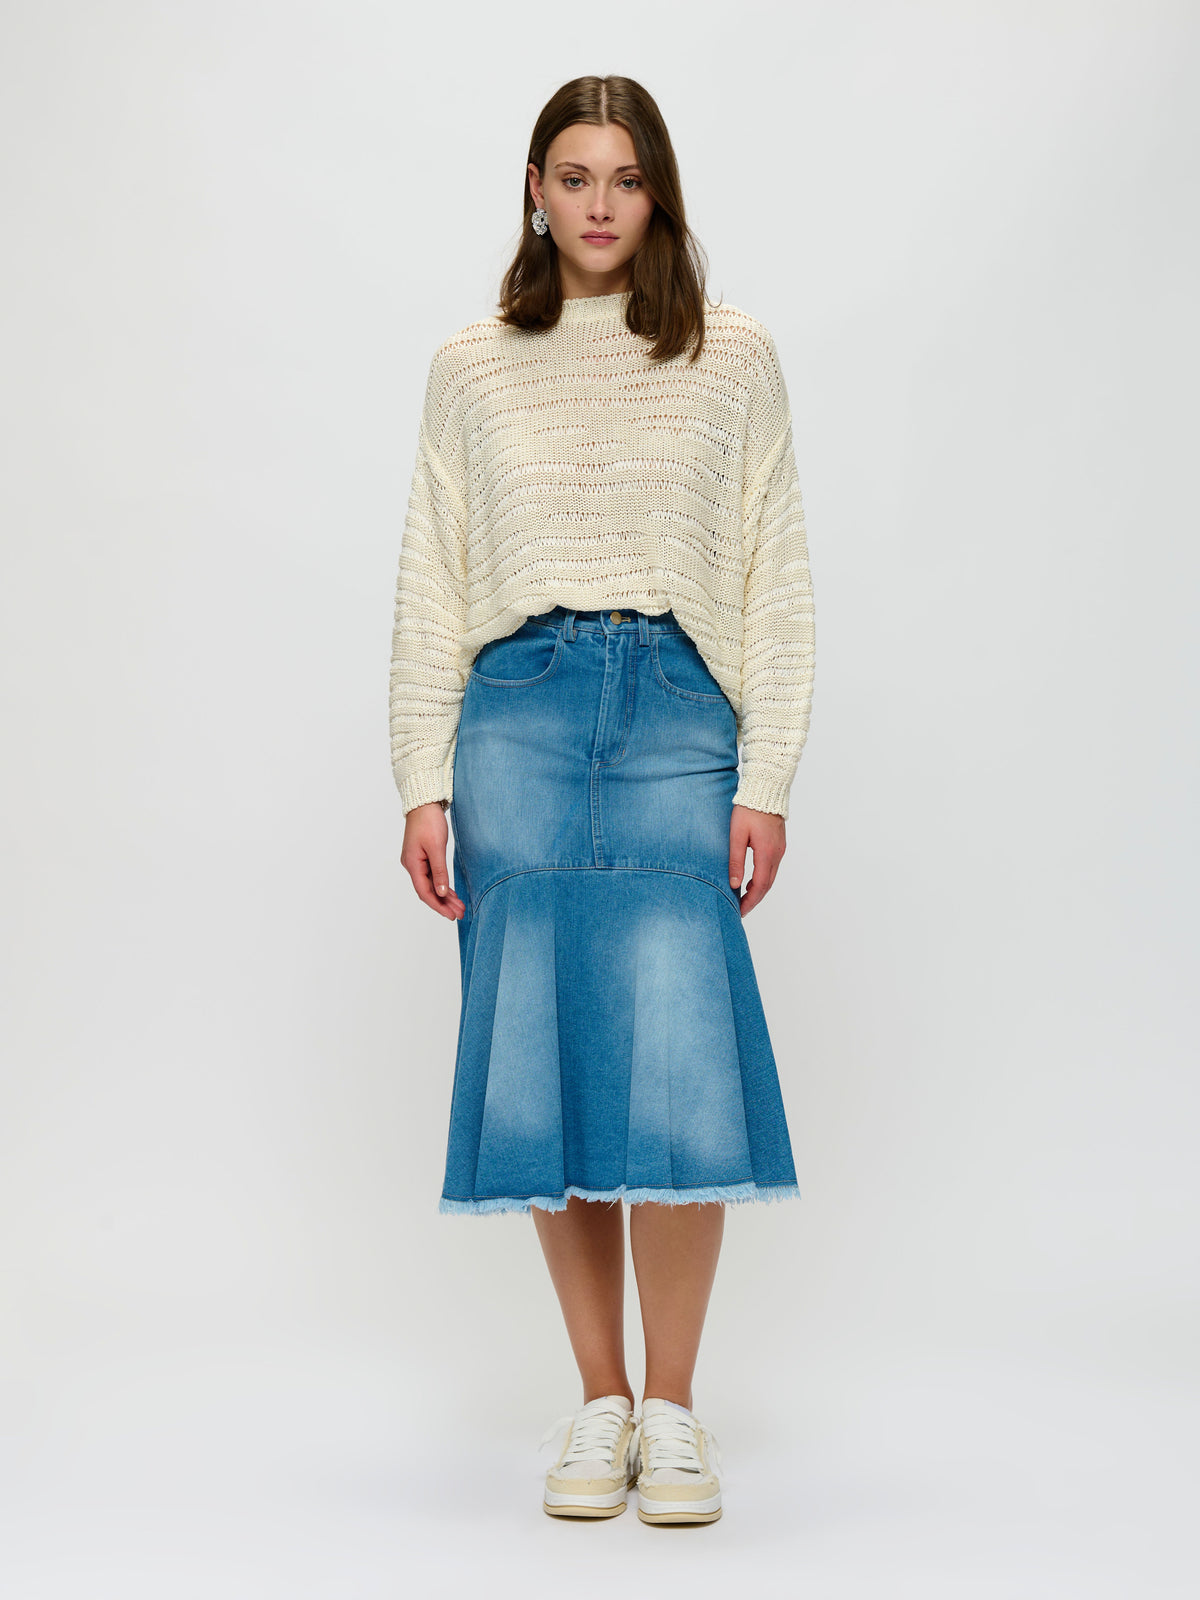 Western-Inspired Denim Skirt